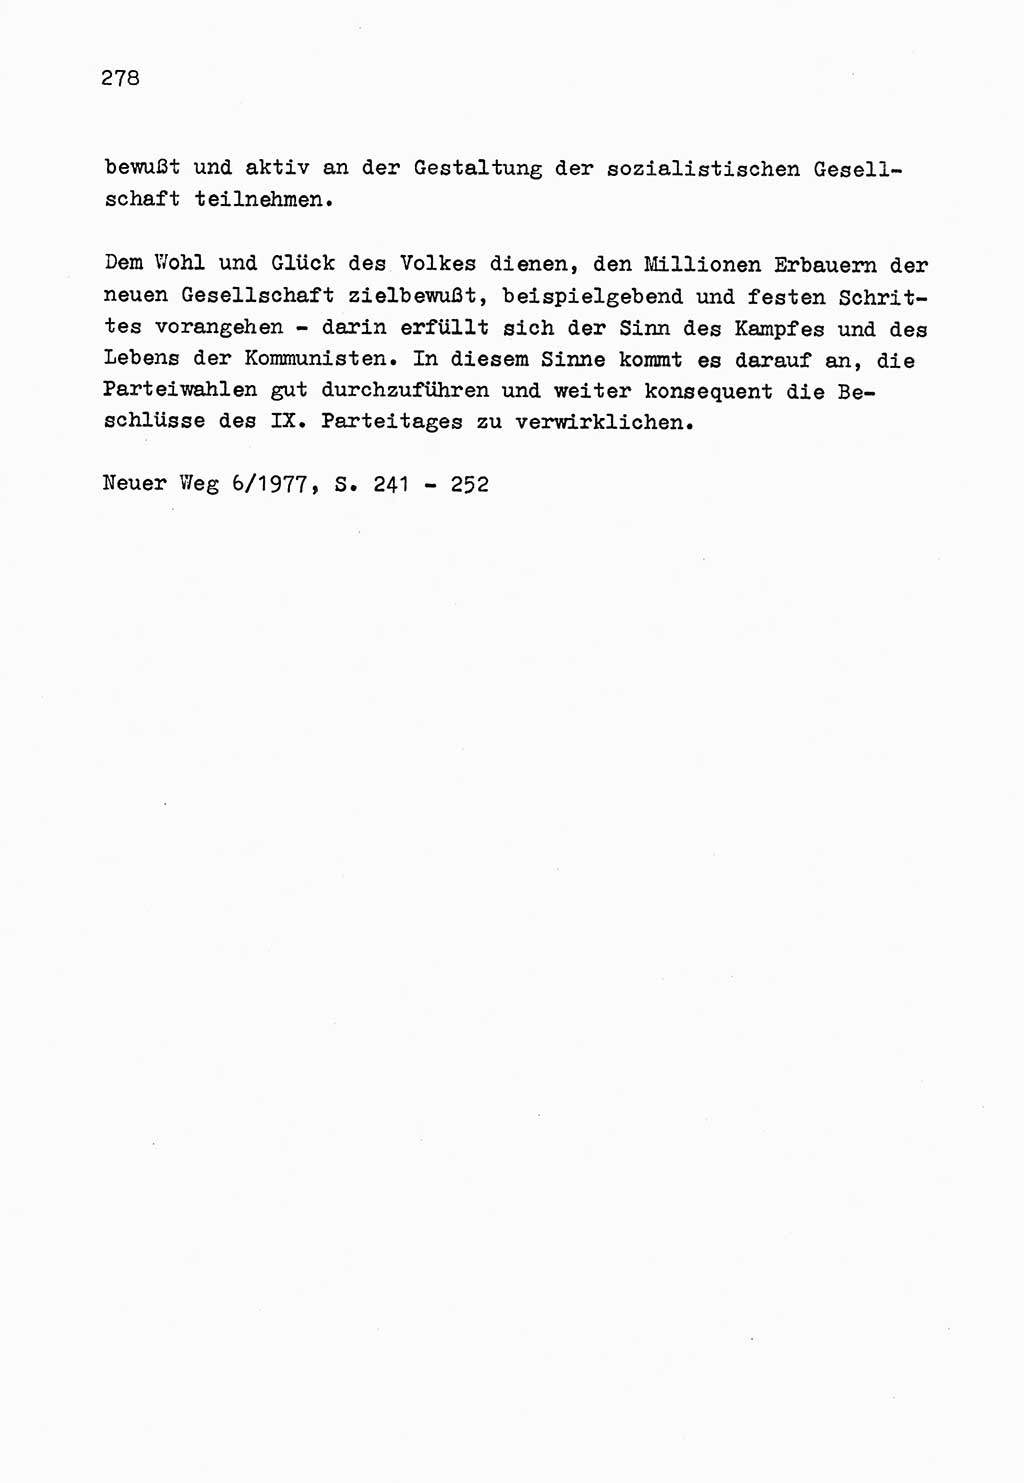 Zu Fragen der Parteiarbeit [Sozialistische Einheitspartei Deutschlands (SED) Deutsche Demokratische Republik (DDR)] 1979, Seite 278 (Fr. PA SED DDR 1979, S. 278)